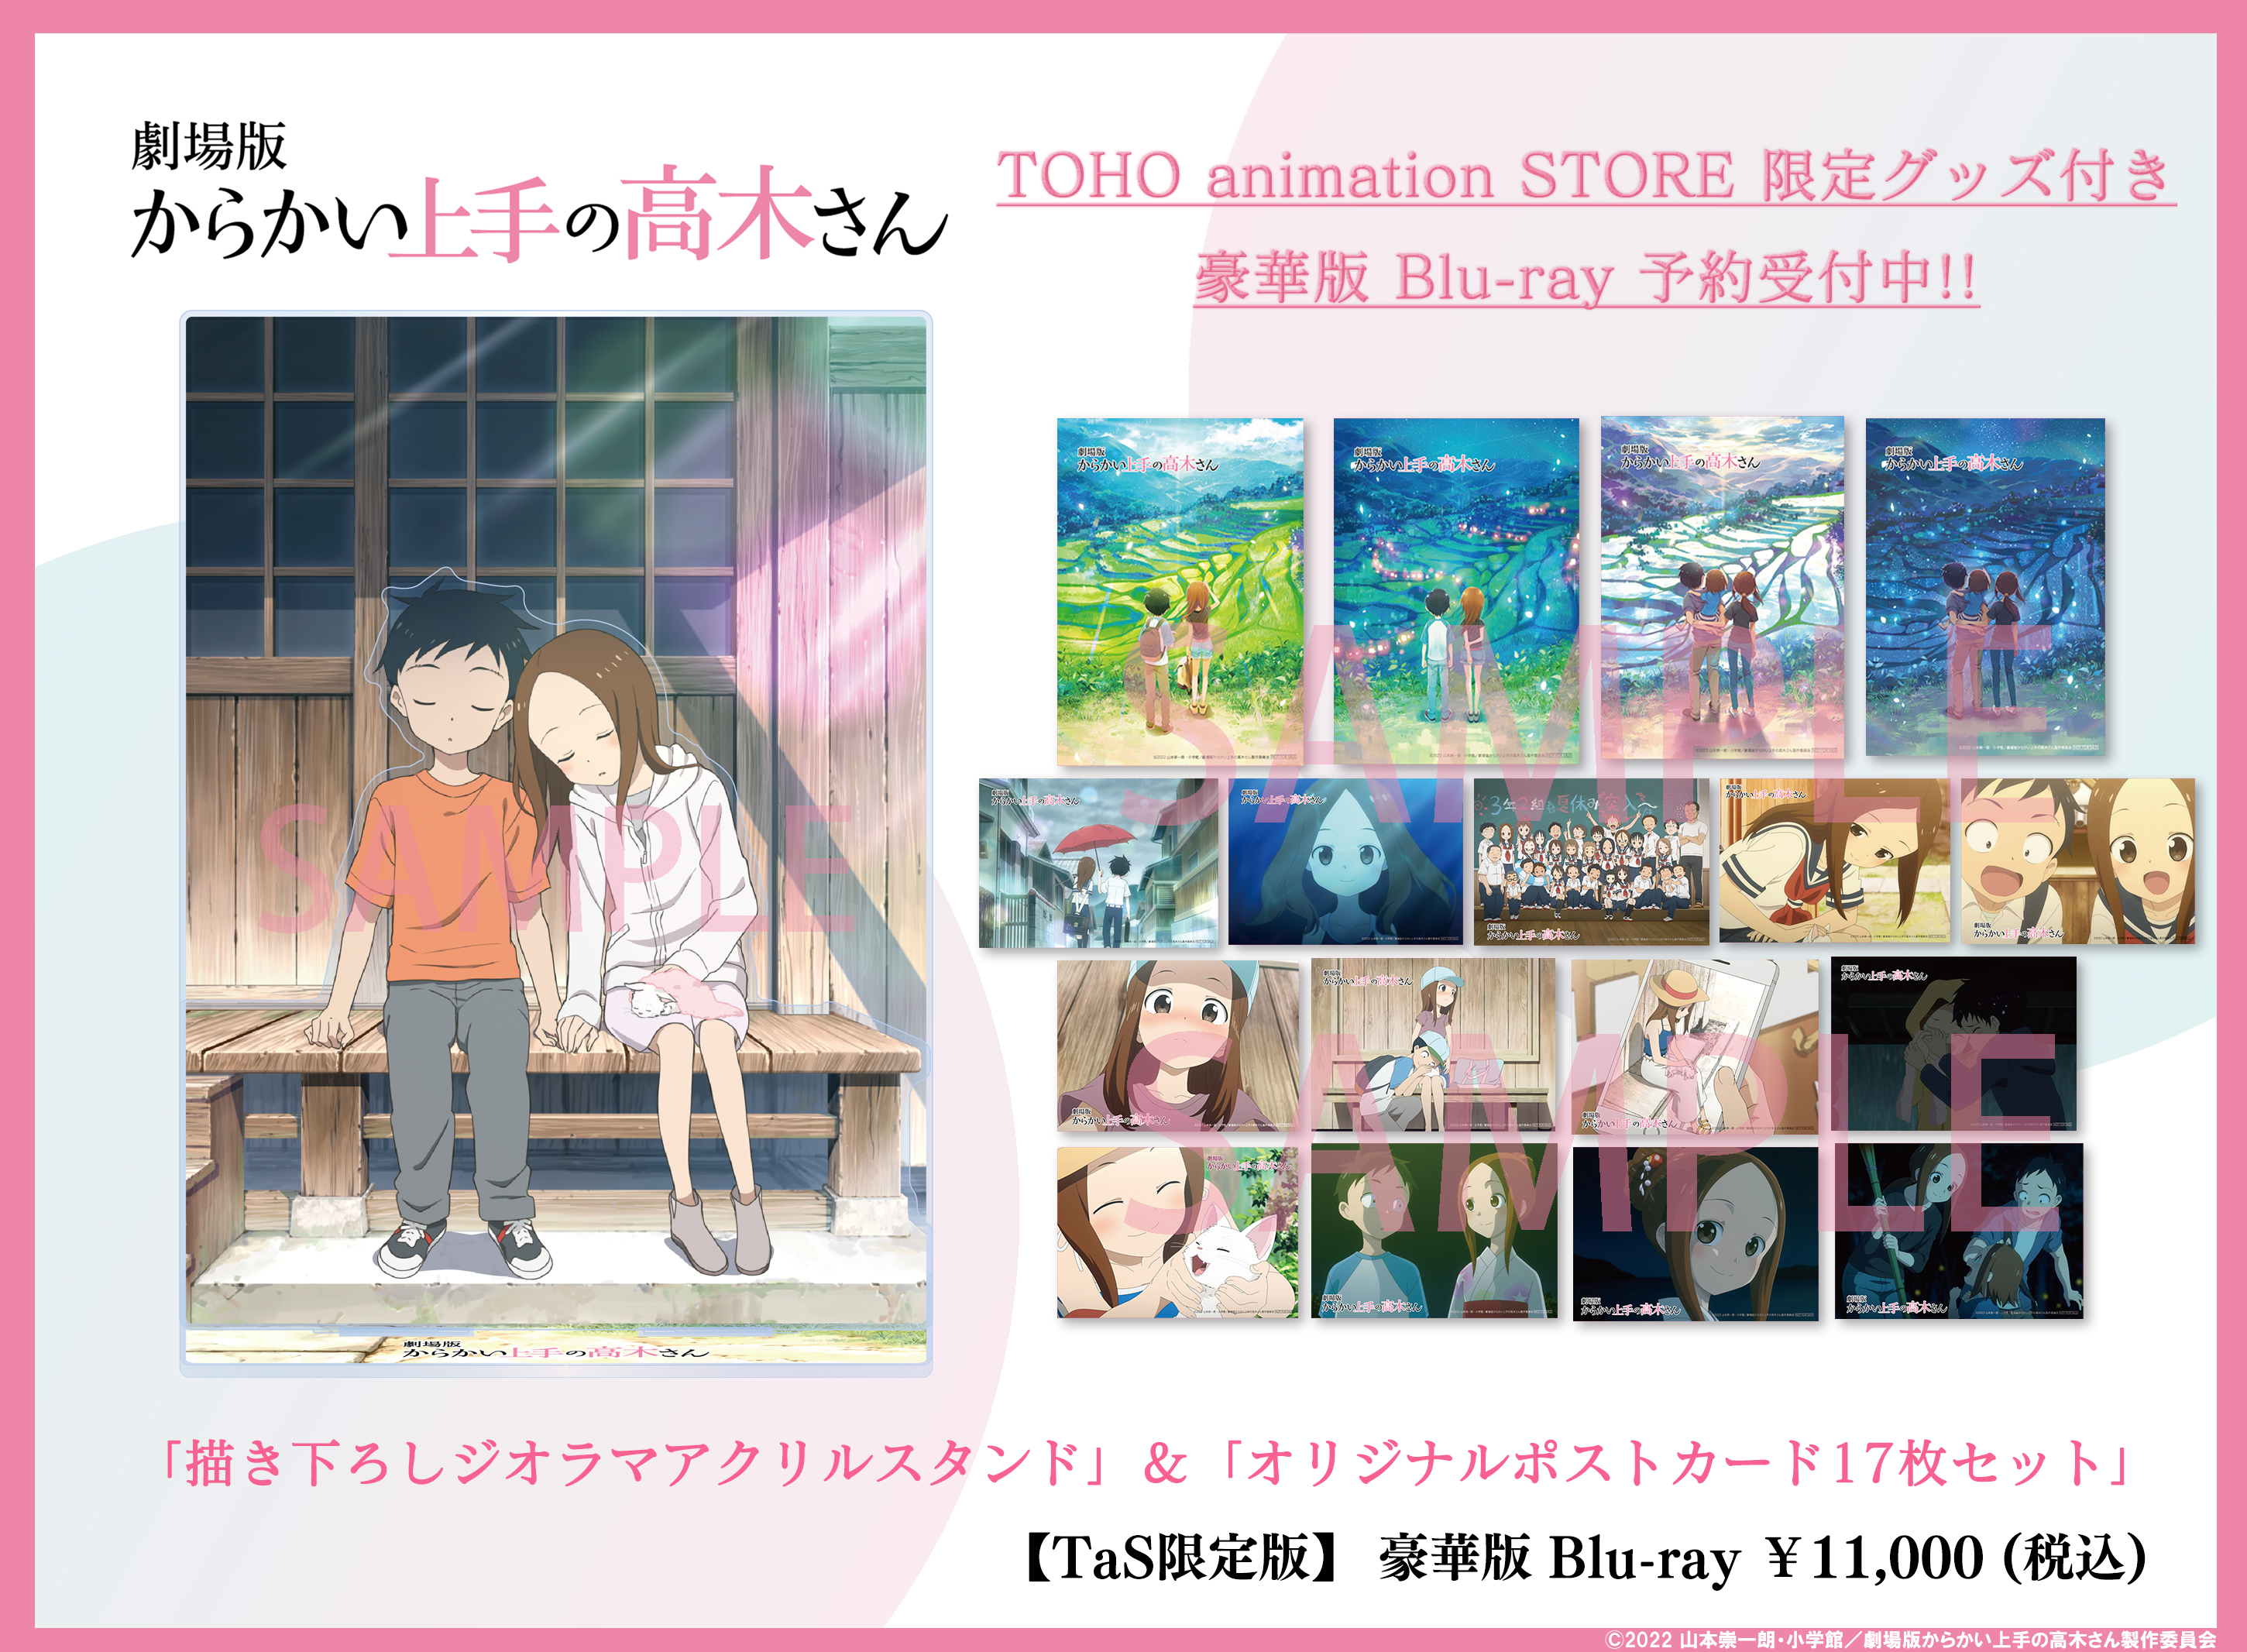 TOHO animation STORE on X: 